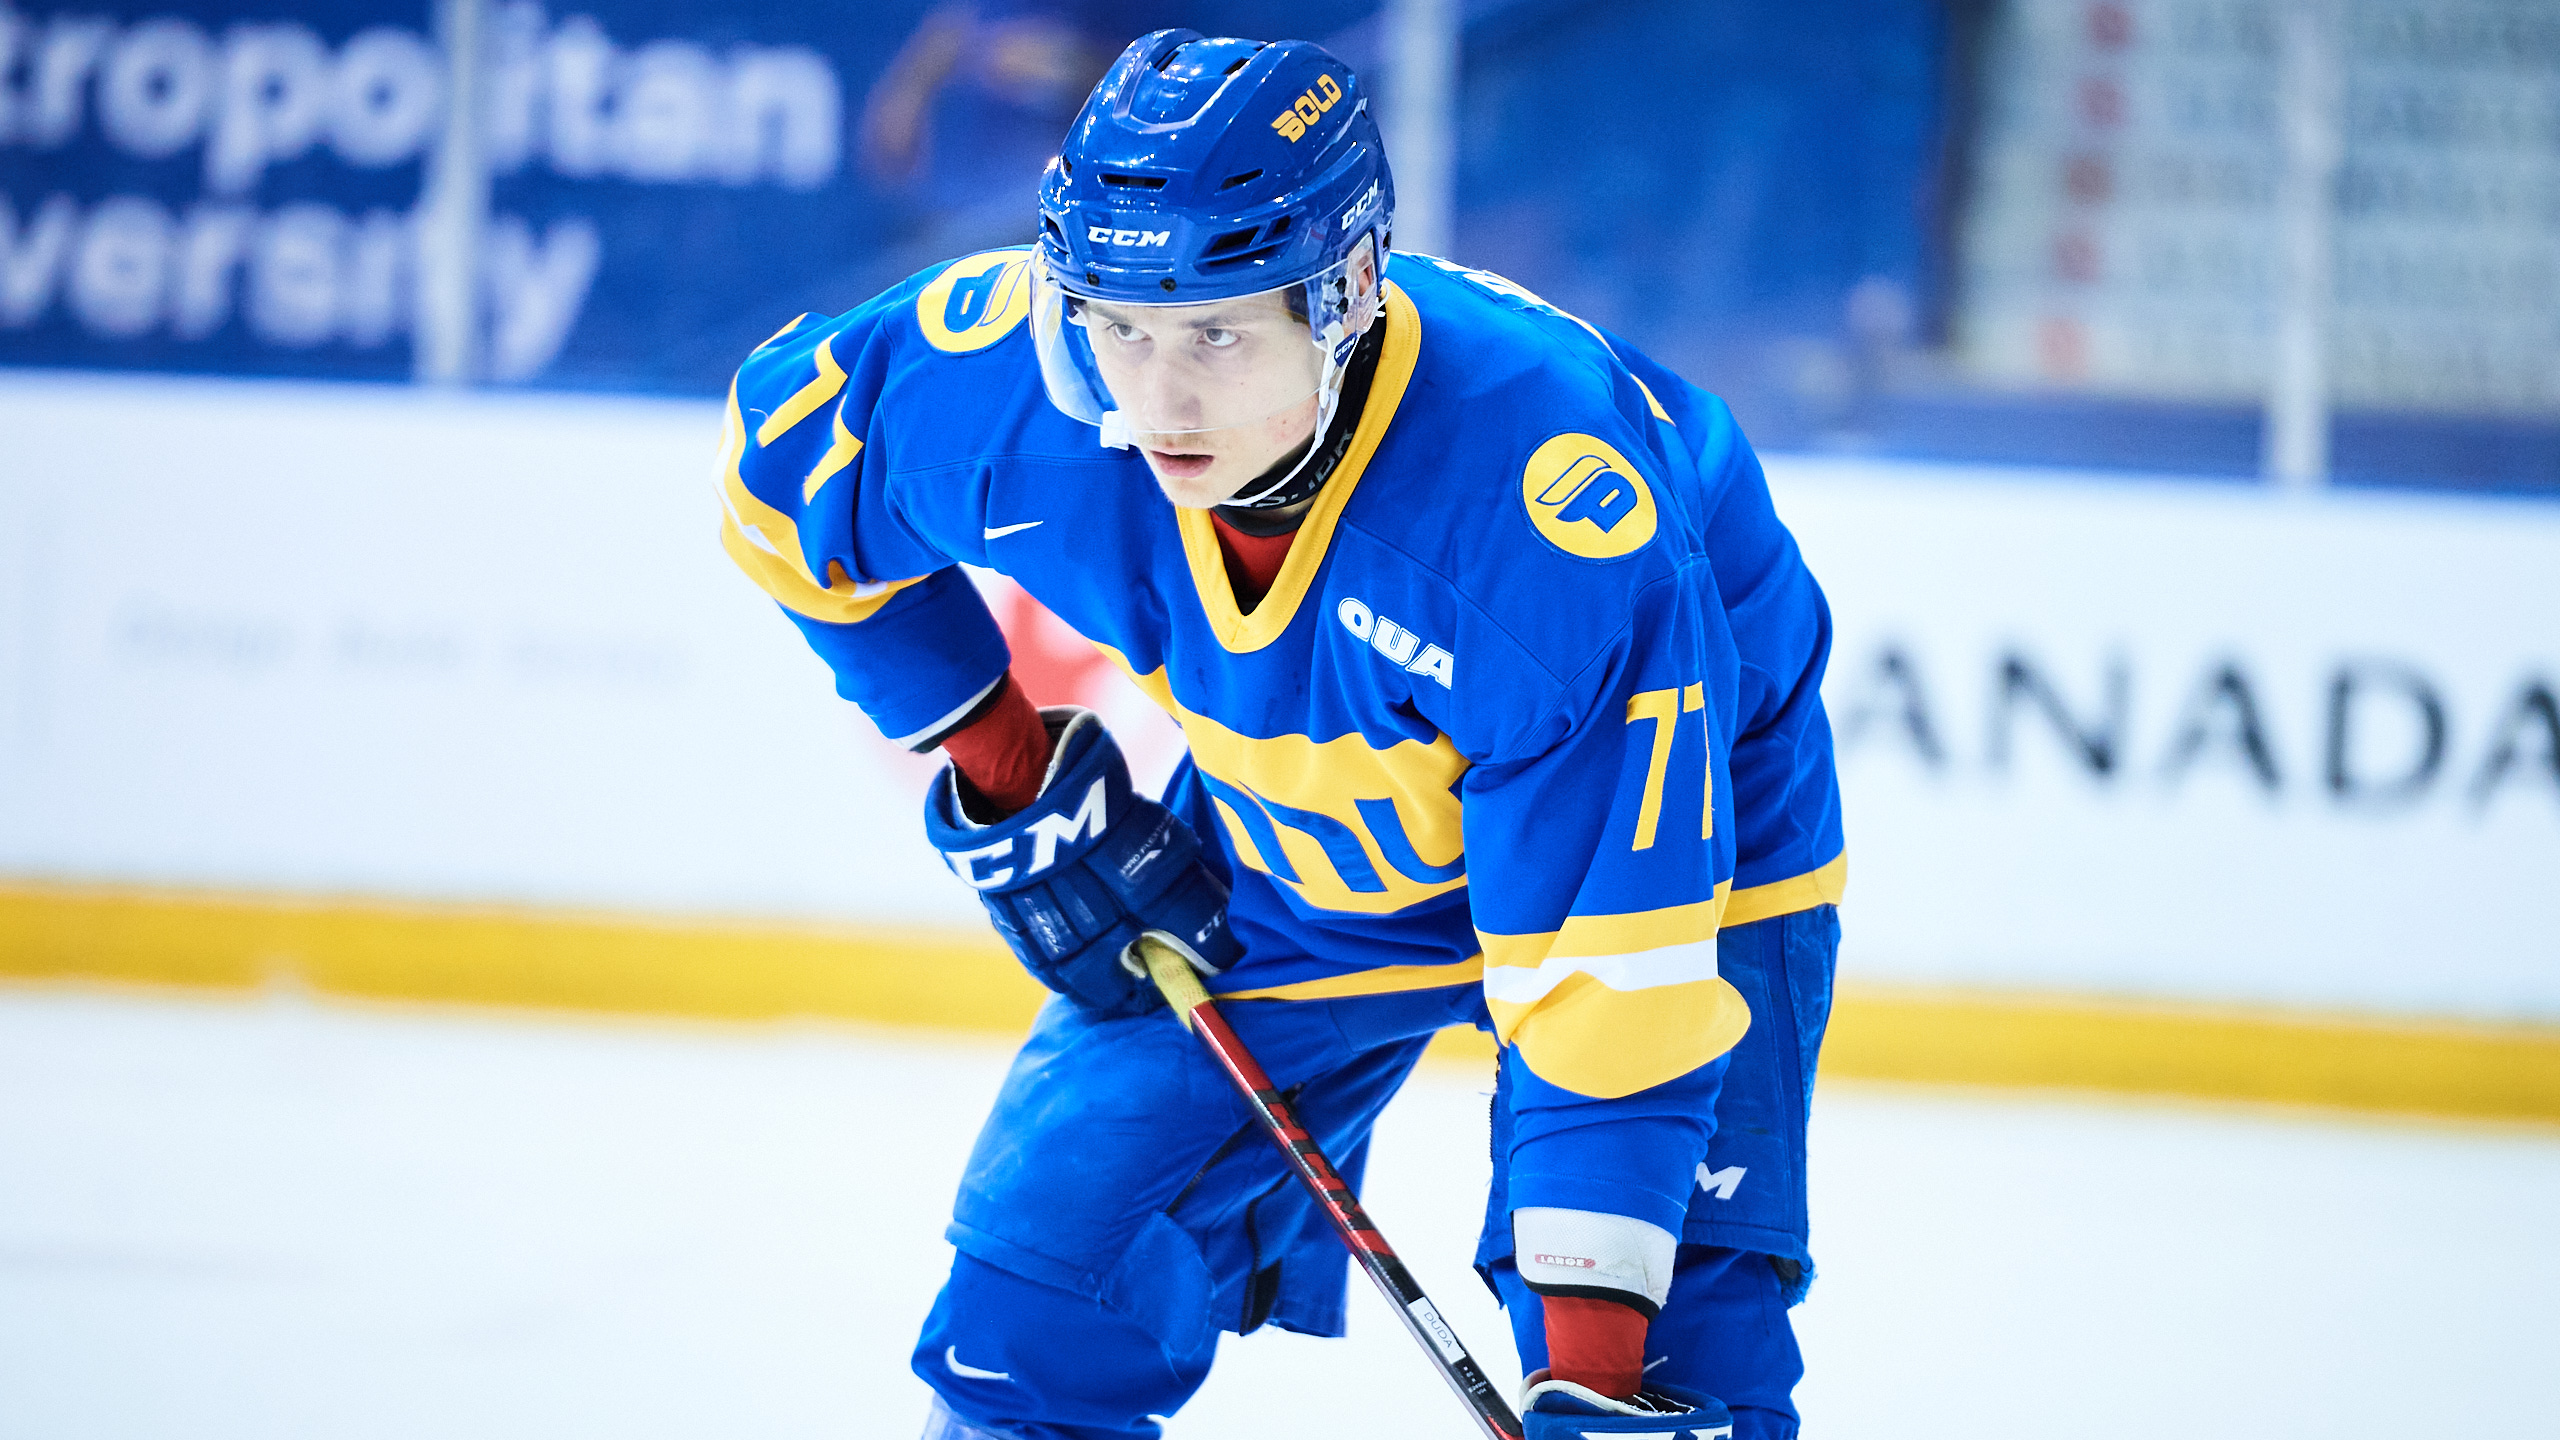 TMU men's hockey player Artem Duda prepares for a faceoff